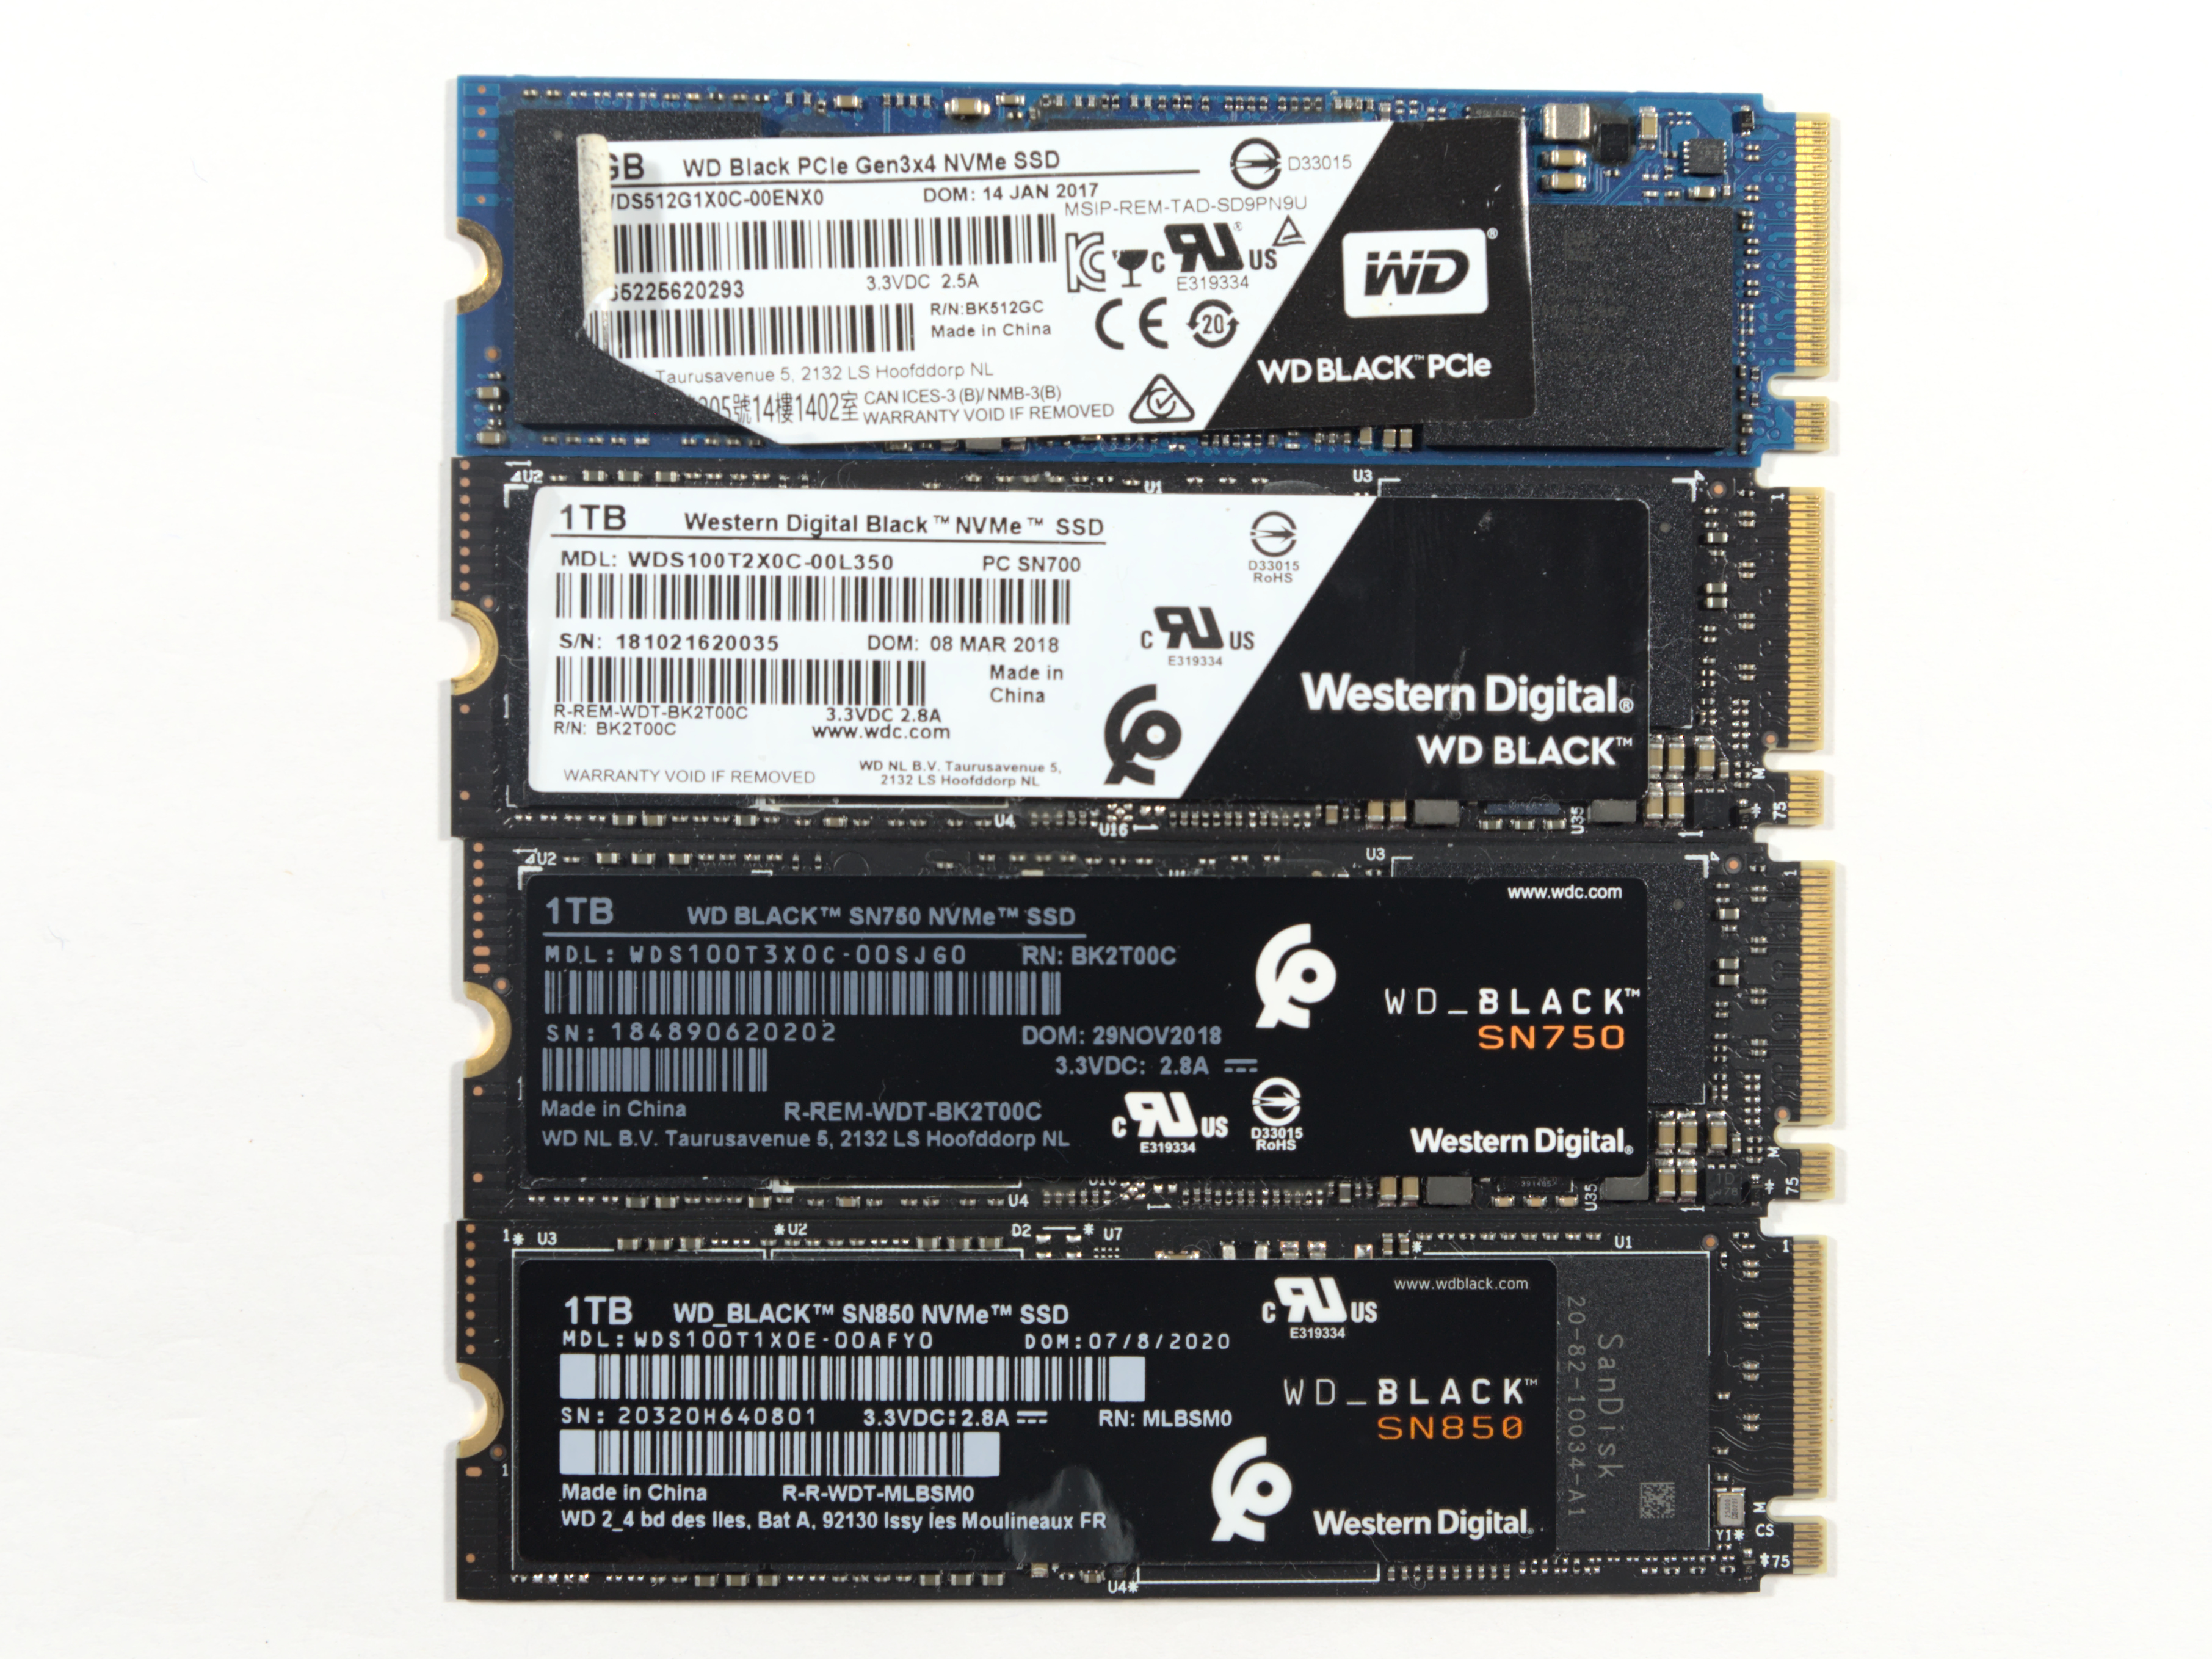 WD Black SN850X 1TB PCIe Gen4 M.2 NVMe SSD Review